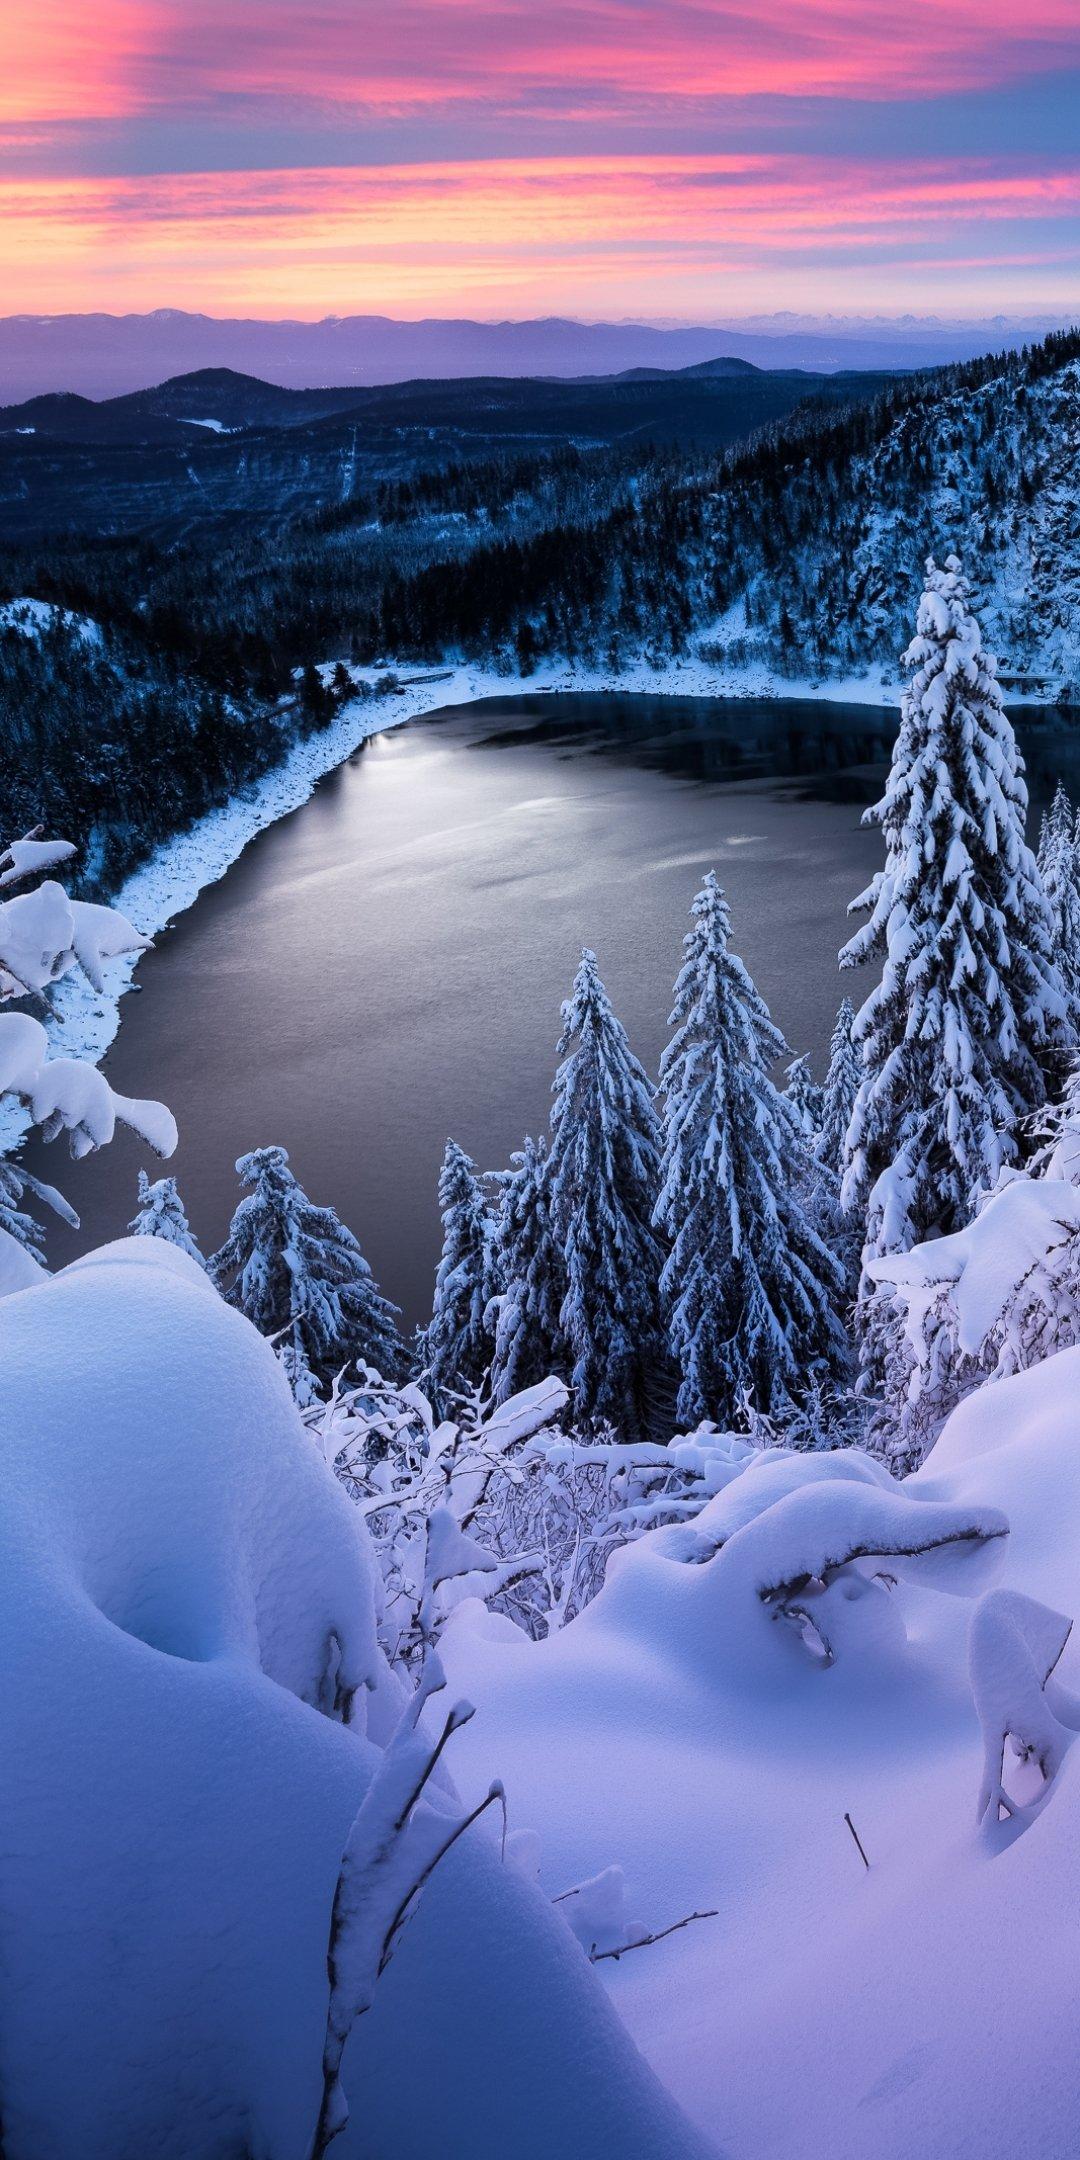 Обои на телефон зимний лес сосны в снегу еловые ветви эстетика зимы | Лес,  Эстетика, Обои